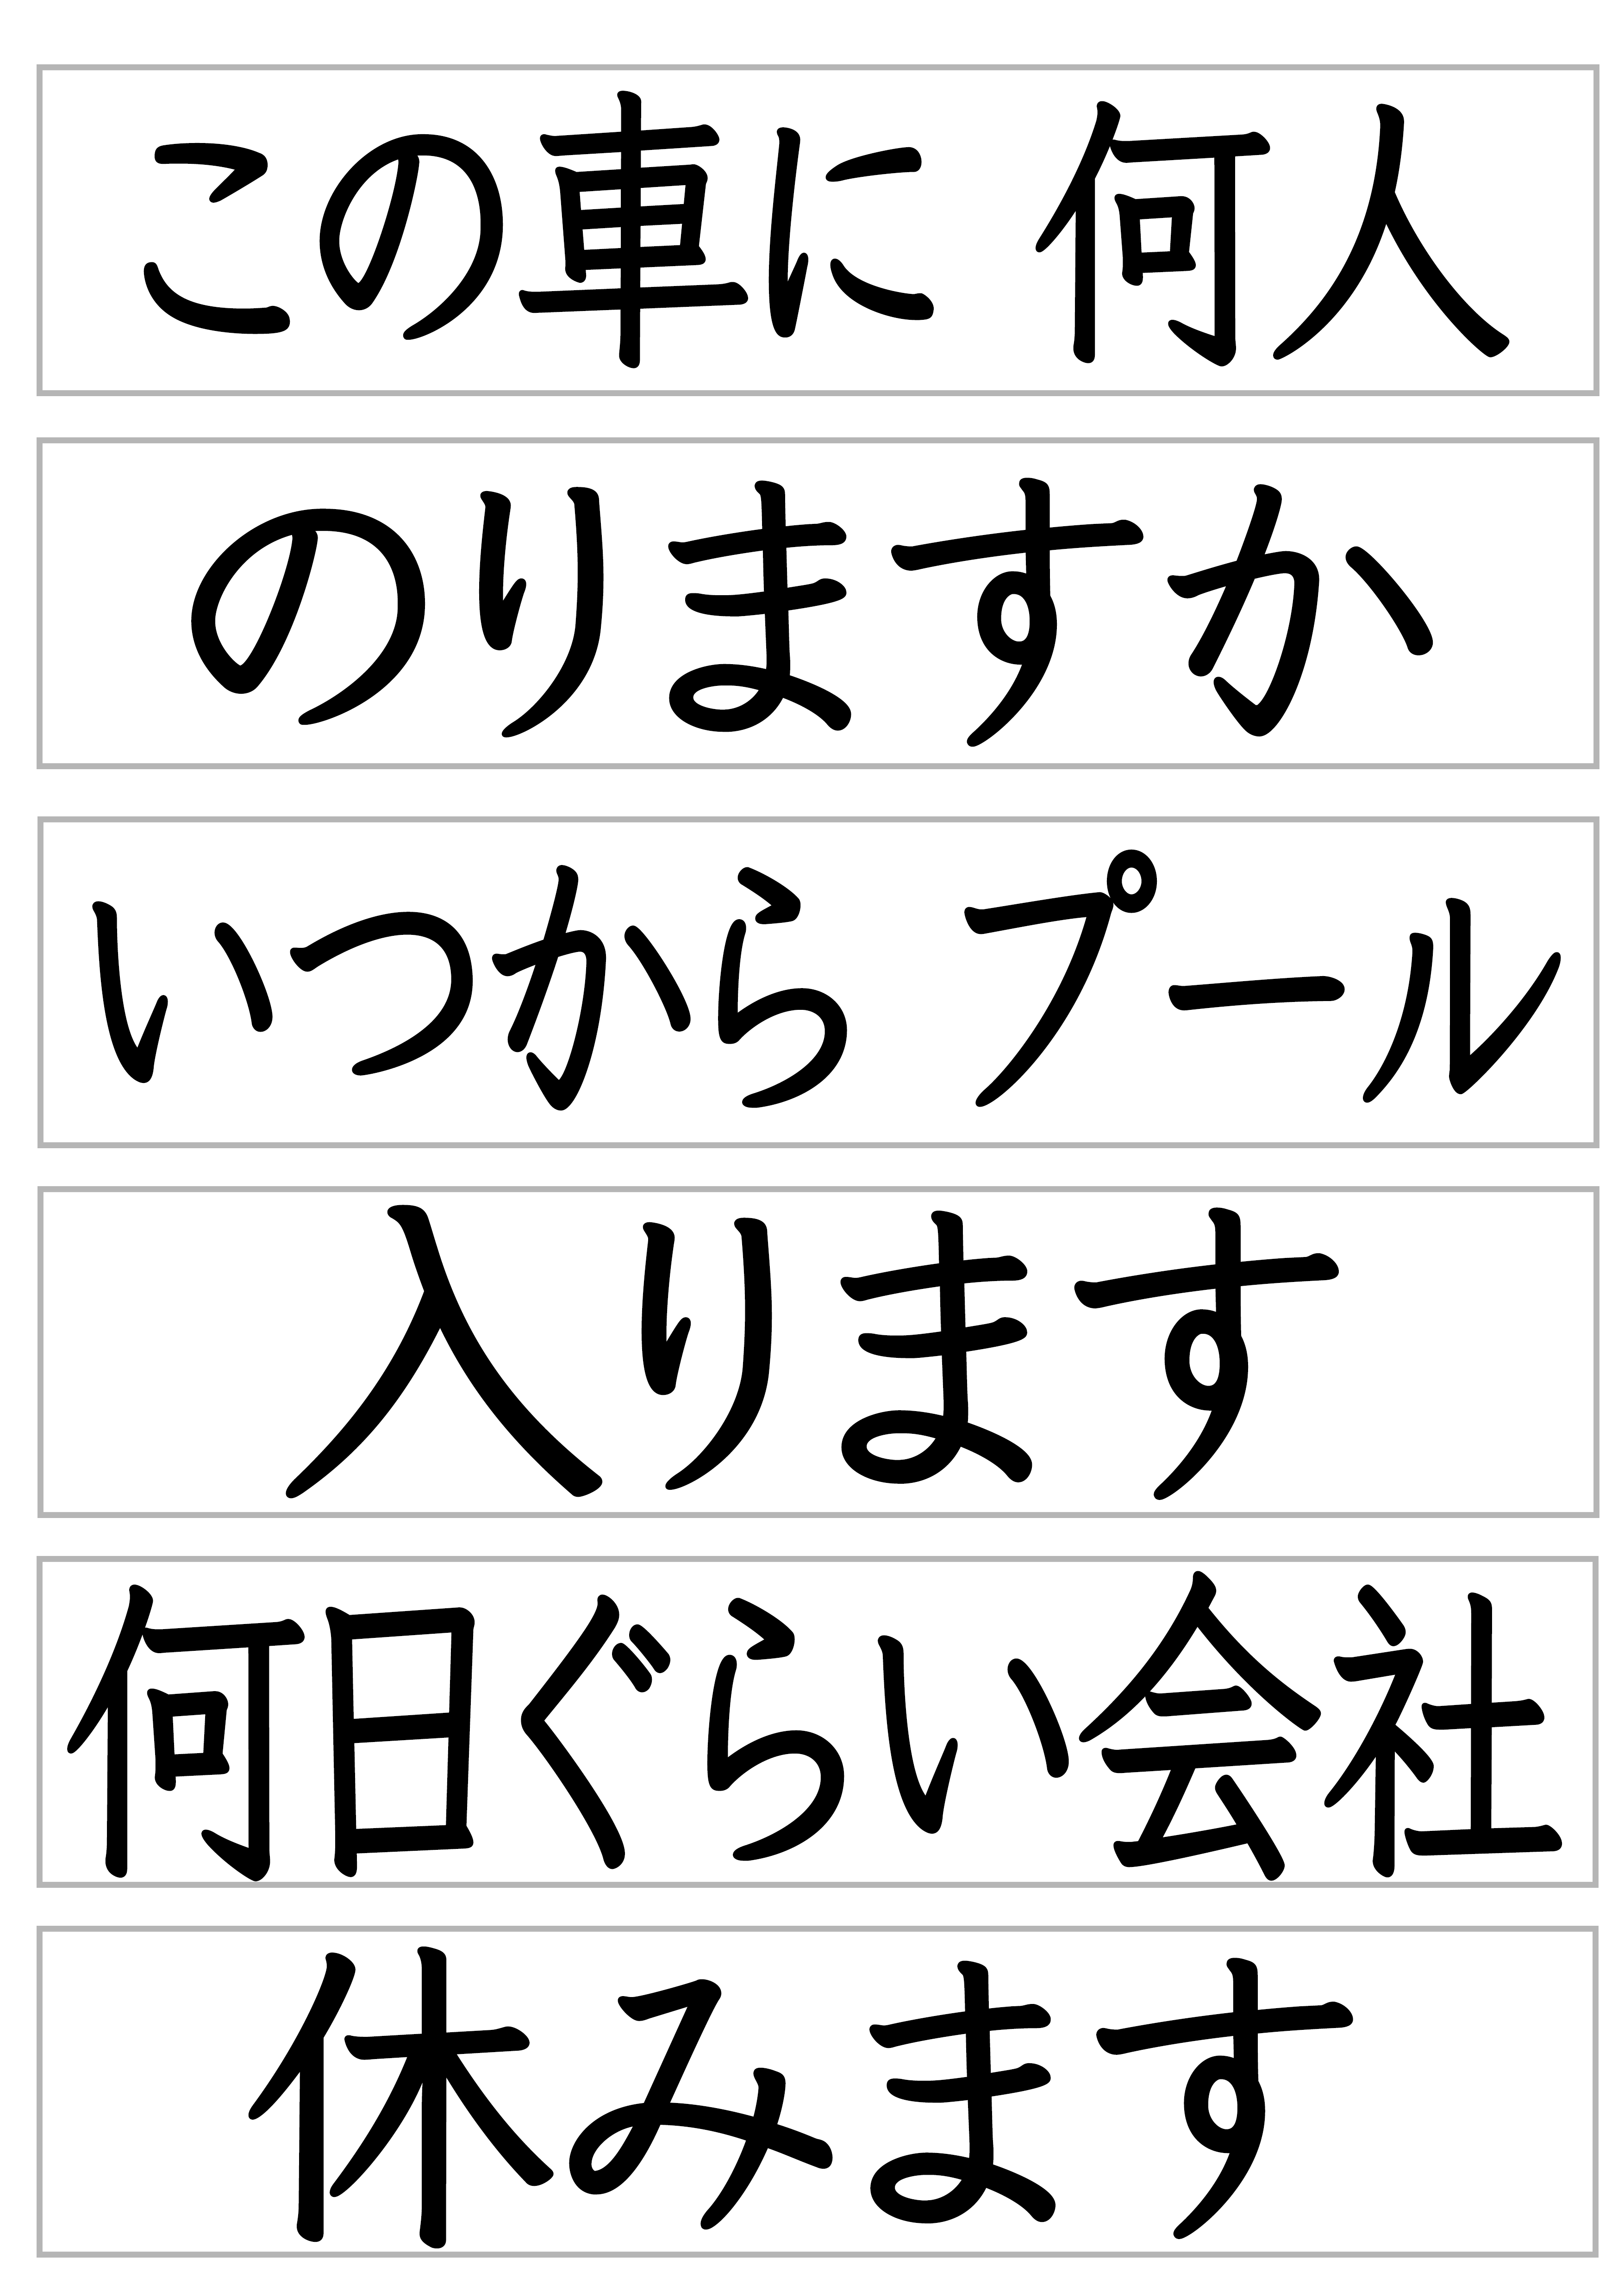 みんなの日本語27課文字カード